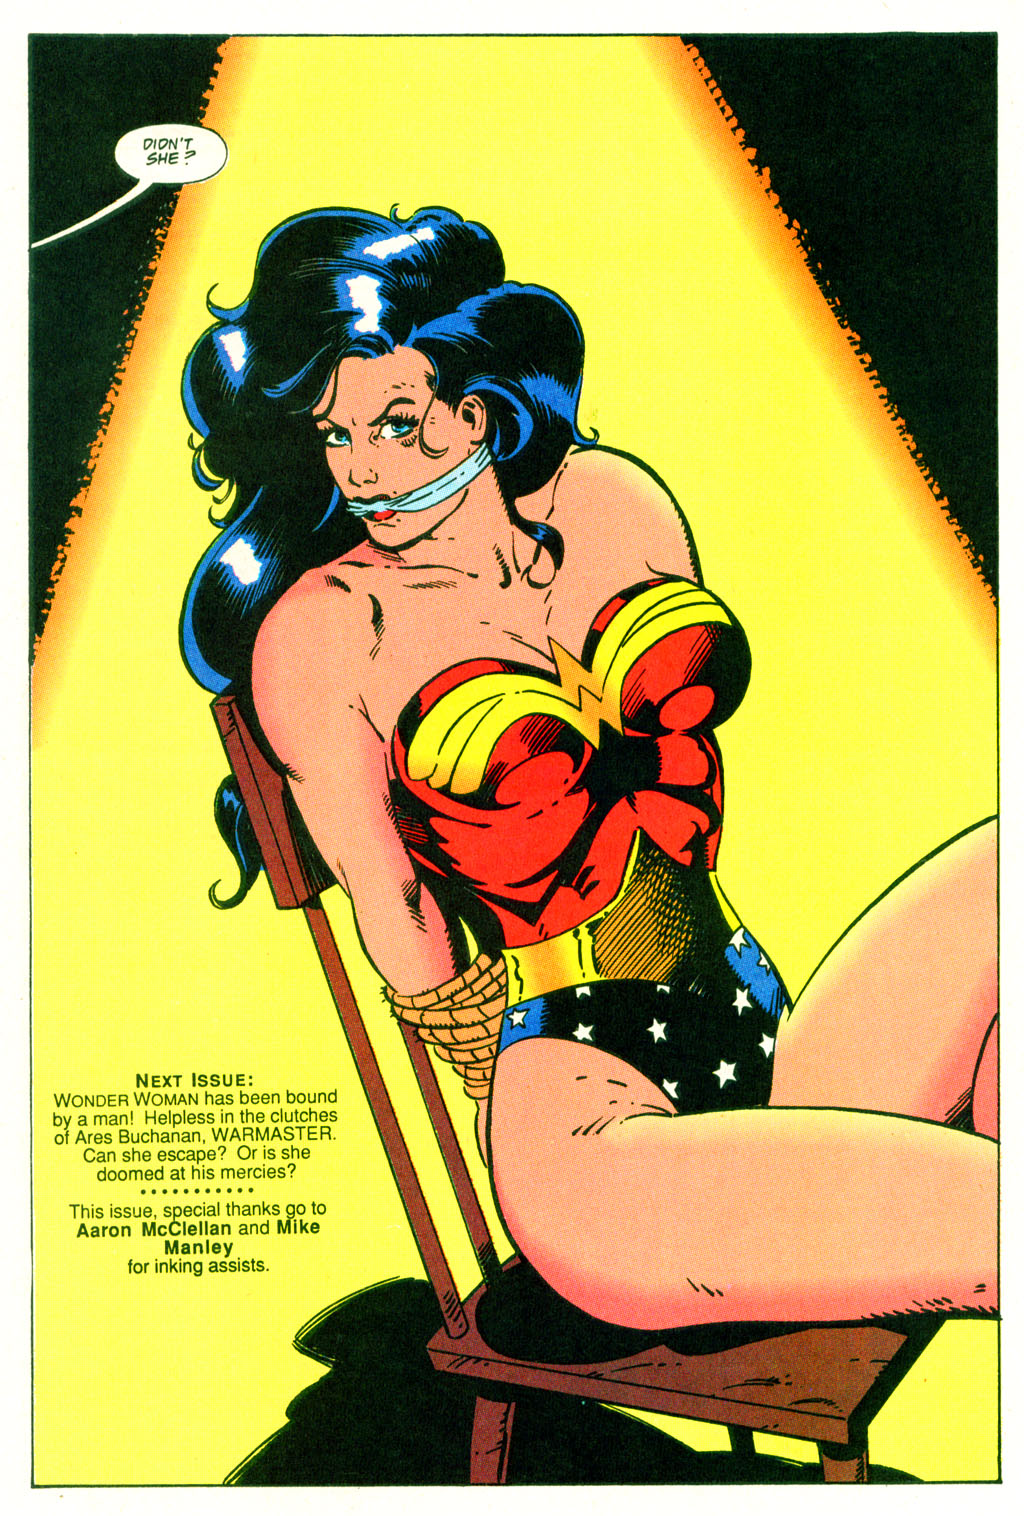 Wonder Woman 1987 Issue 82.